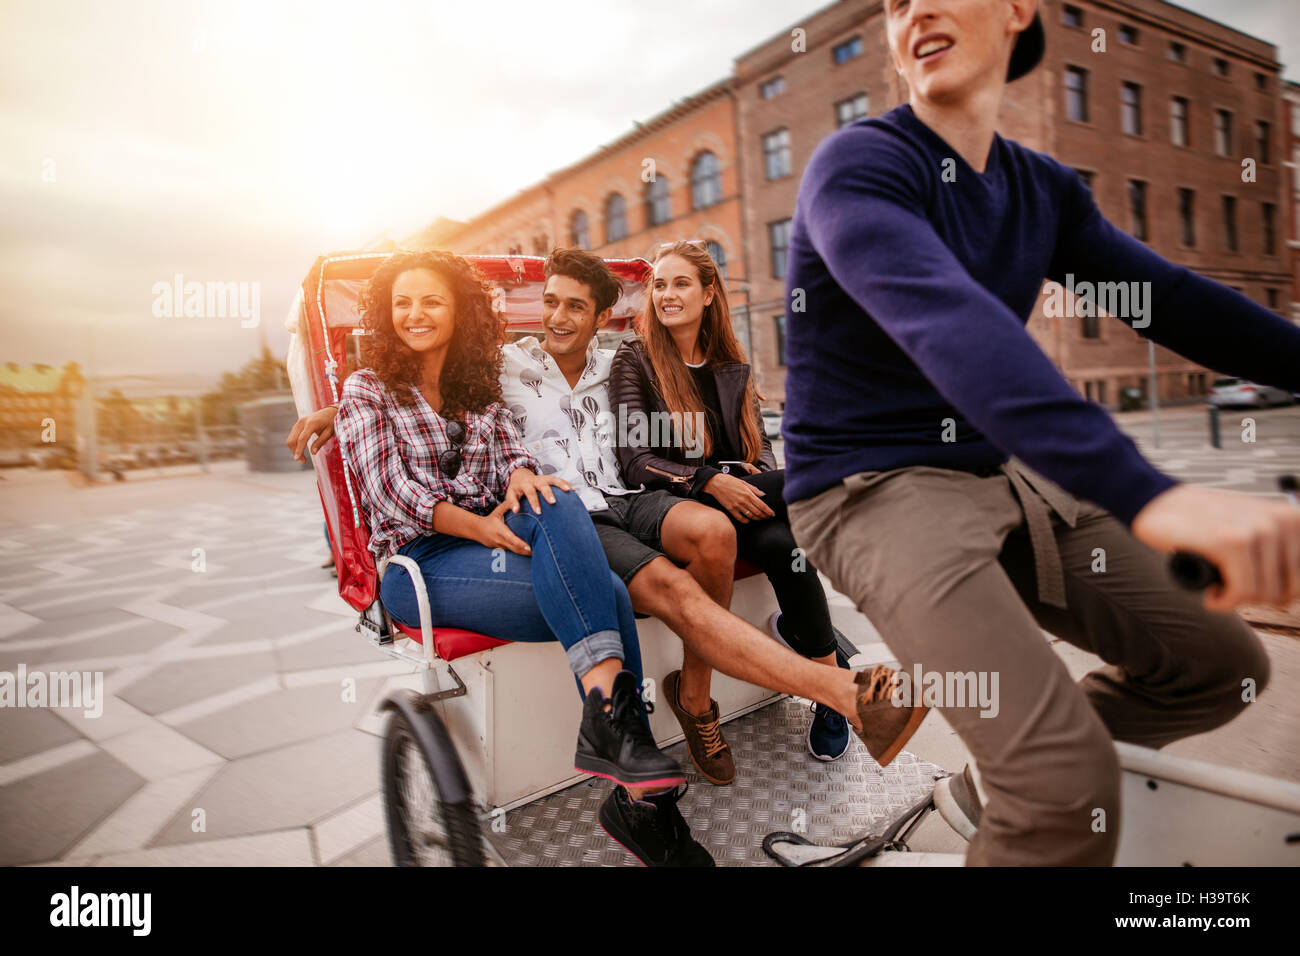 Grupo de adolescentes viajen en triciclo en la ciudad. Los jóvenes, hombres y mujeres, montando en triciclo en la carretera. Foto de stock